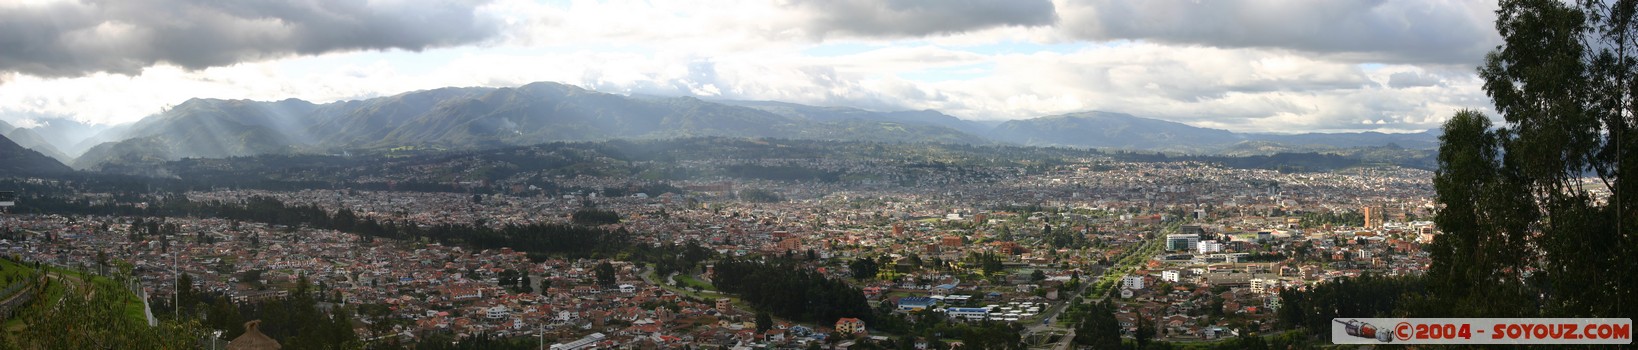 Mirador de Turi - vue panoramique sur Cuenca
Mots-clés: Ecuador panorama